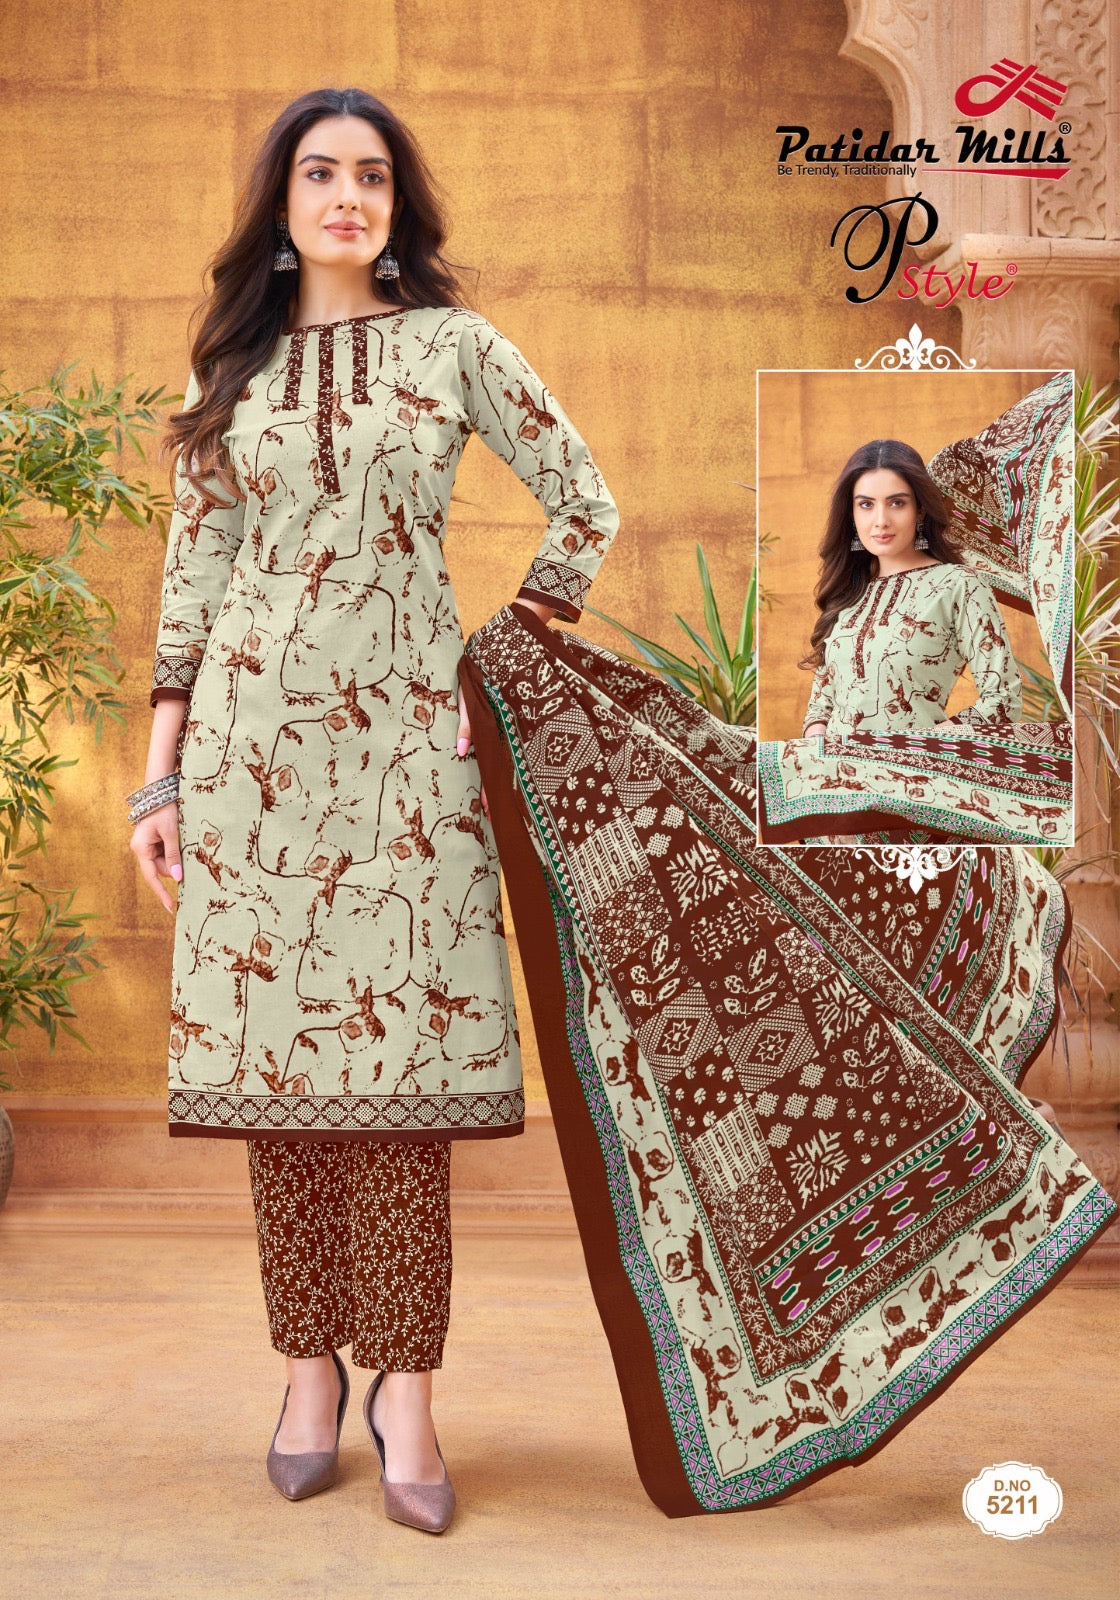 Patidar Mills PStyle Vol 52 Pure Cotton Printed Dress Material Wholesaler In Jetpur